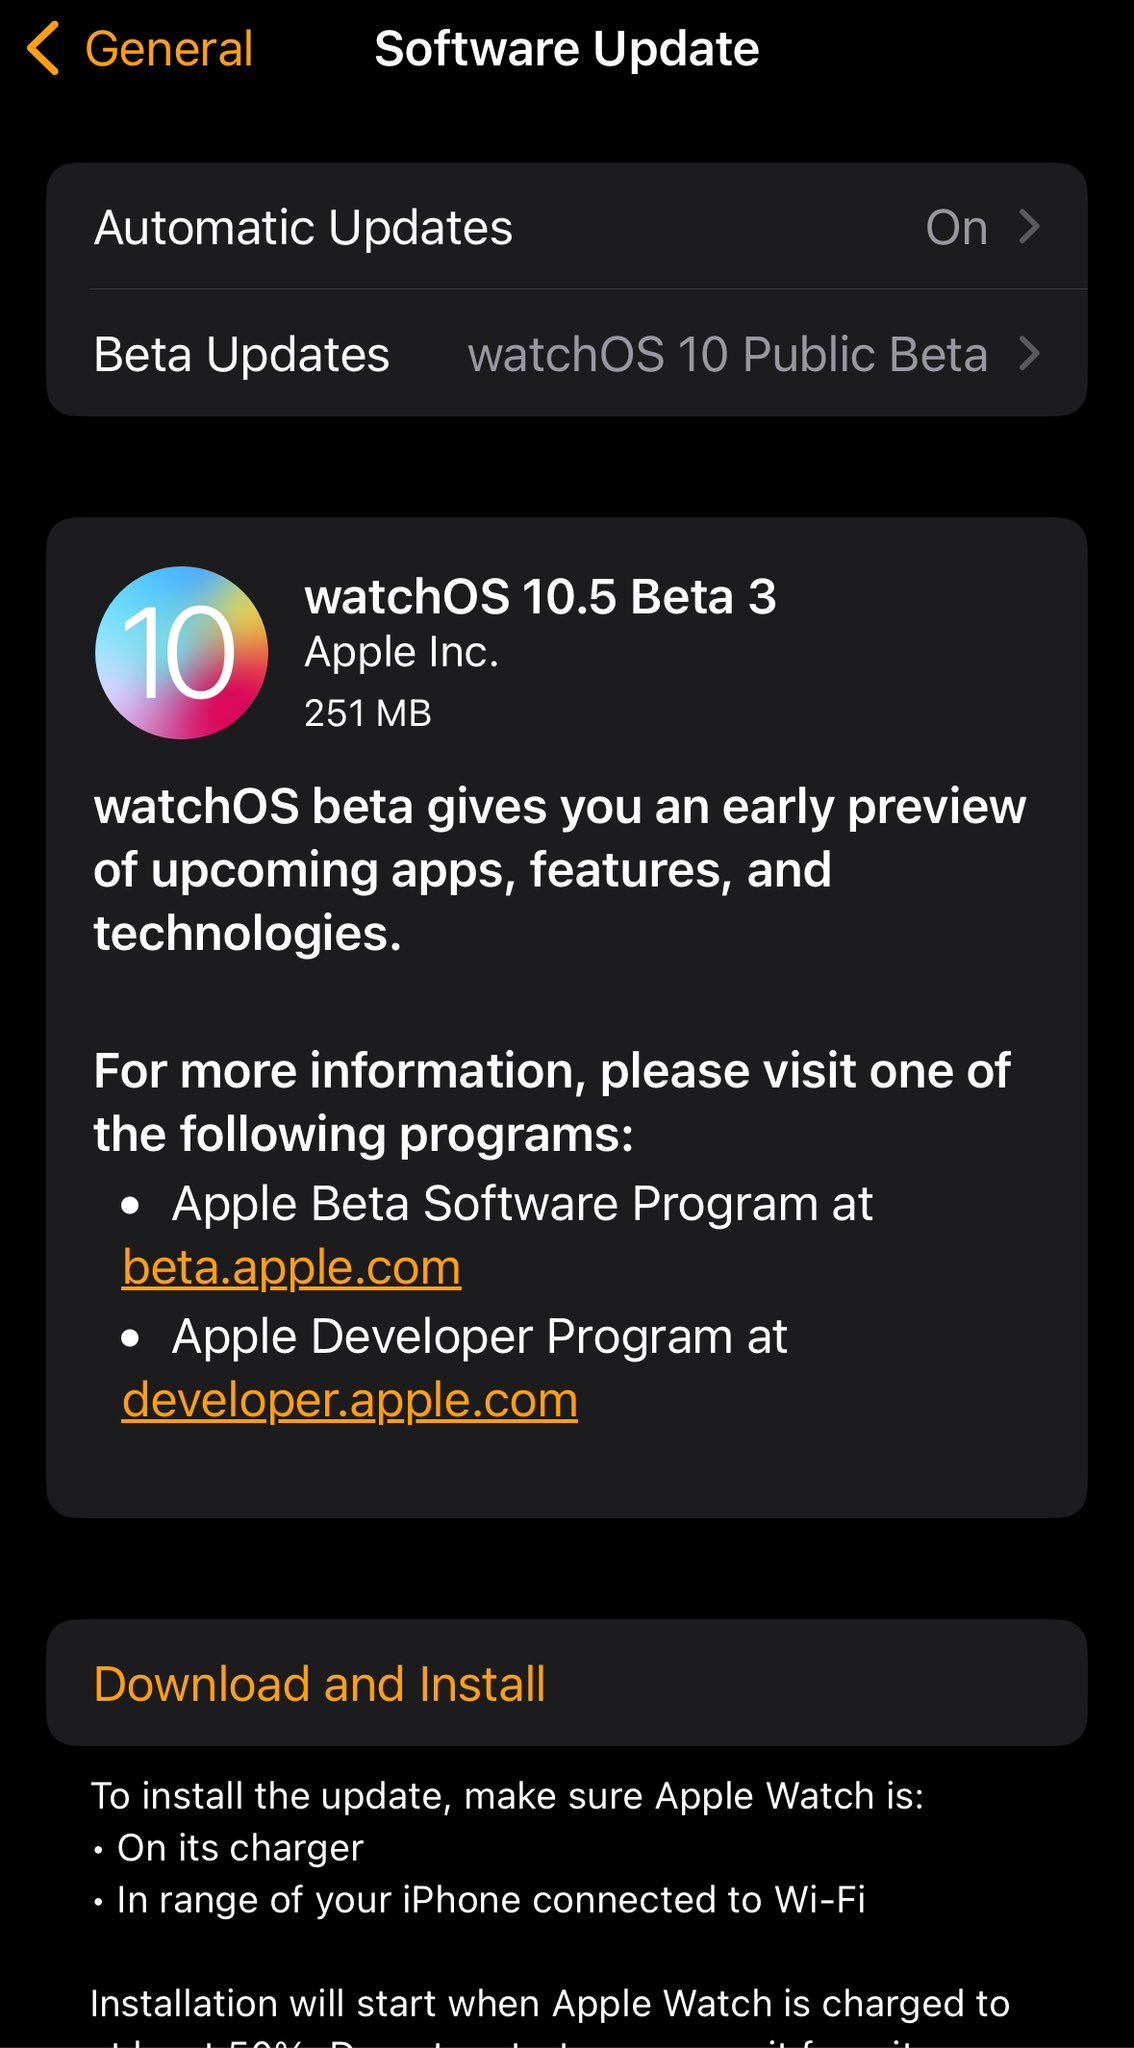 苹果发布 iOS / iPadOS 17.5、macOS 14.5、watchOS 10.5 第 3 个公测版